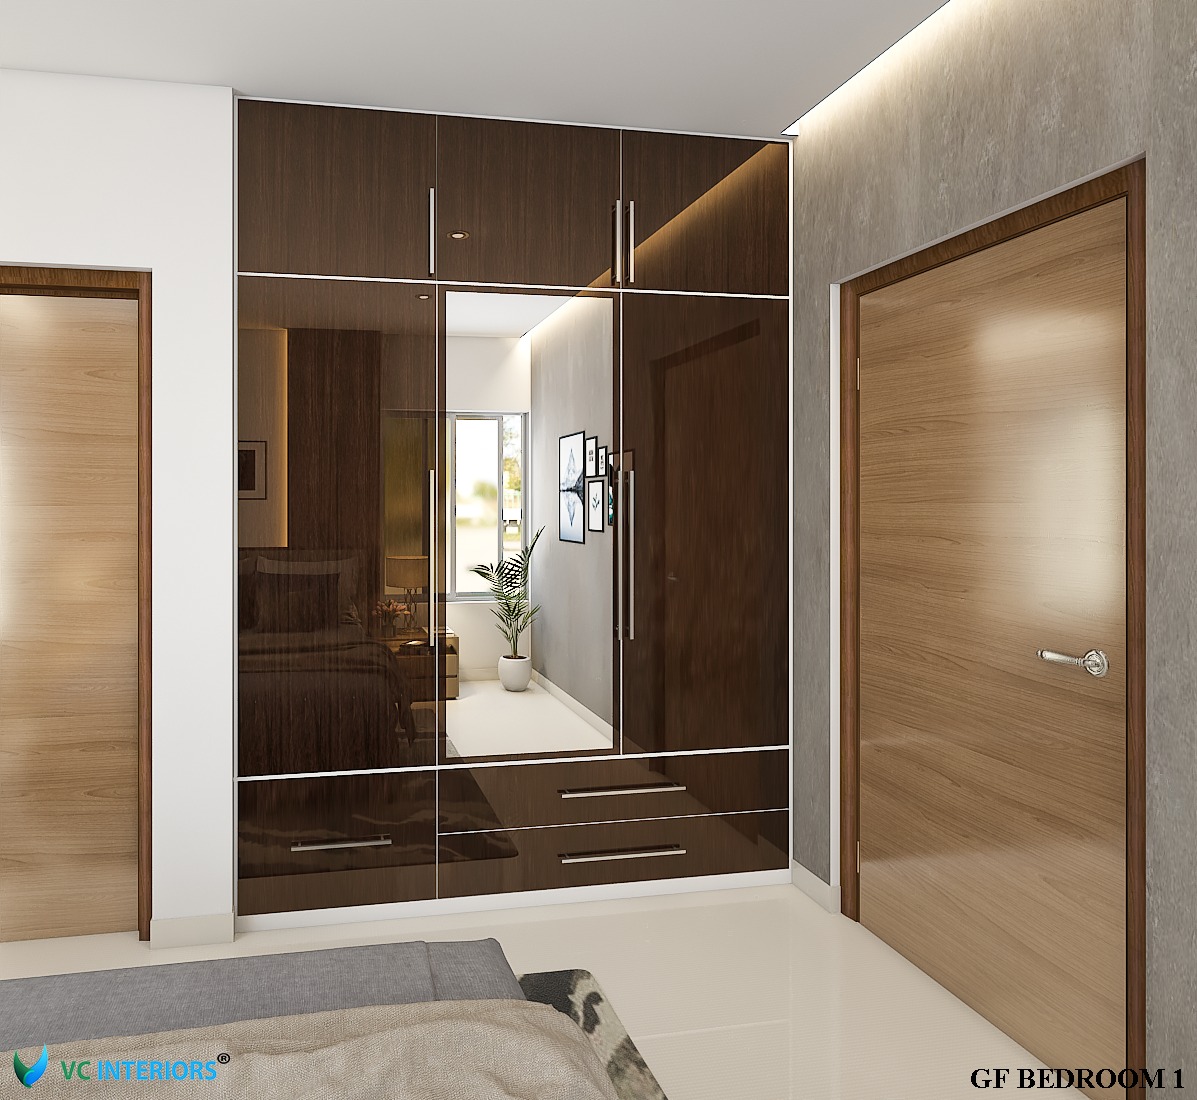 VC Interiors | Bedroom interior designer in trivandrum